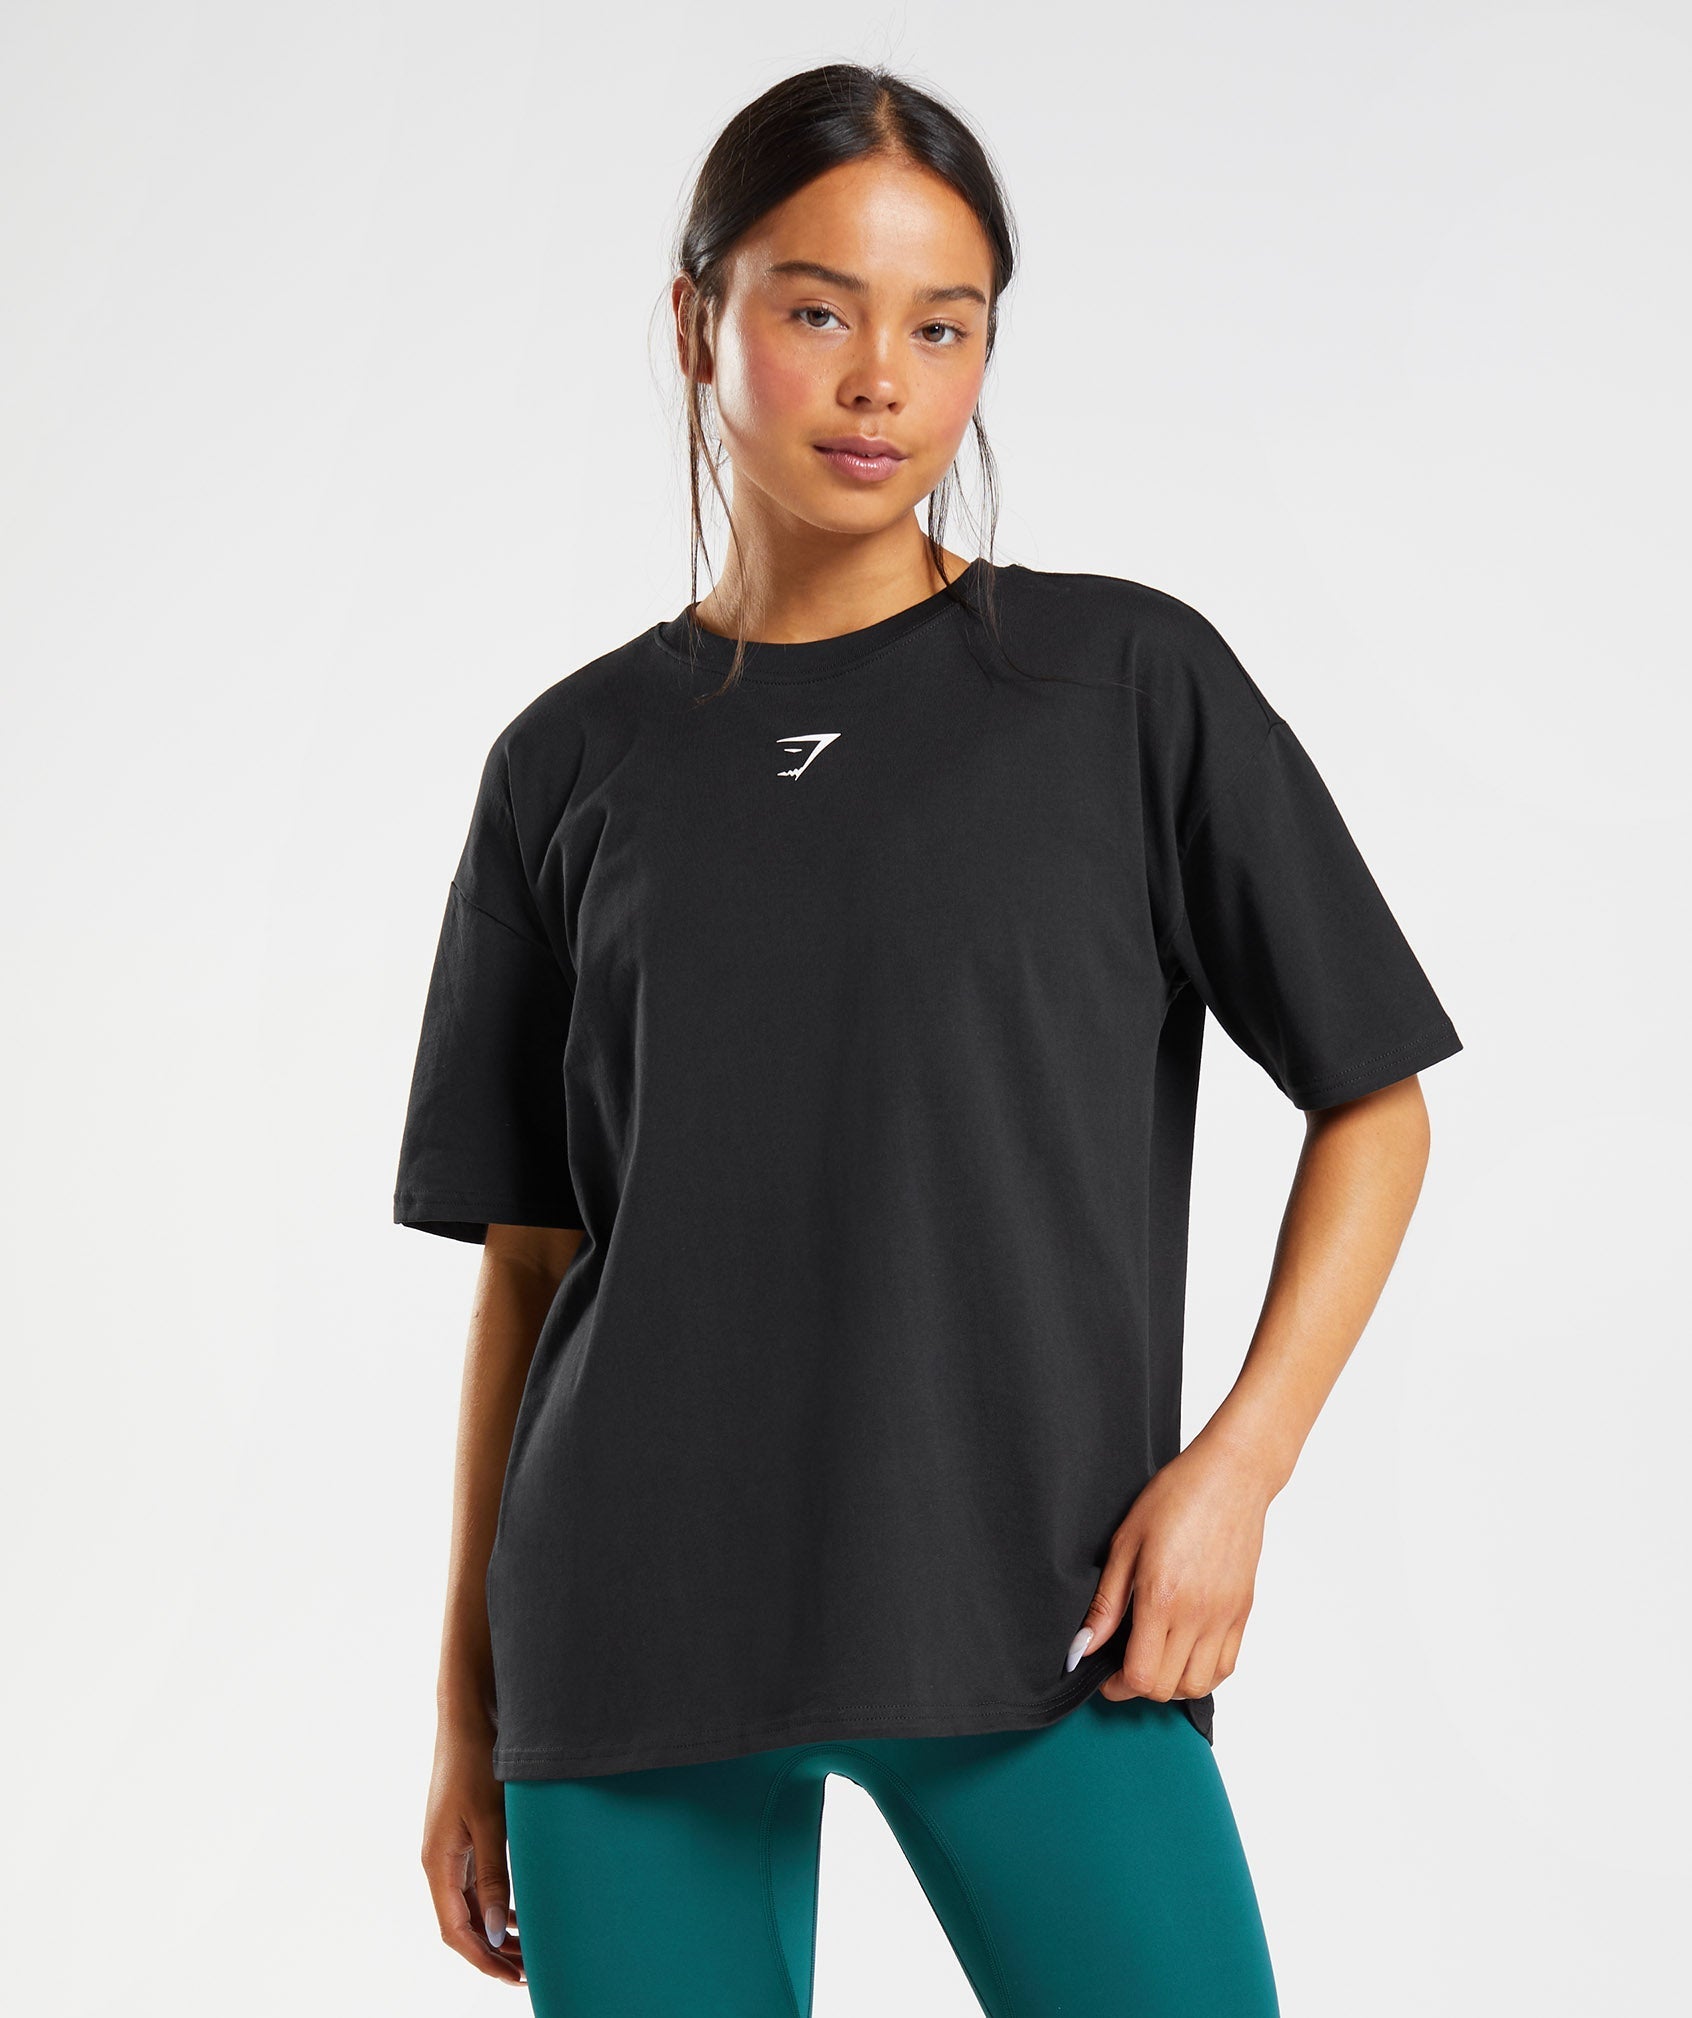 Women's Short Sleeve Workout Shirts & Tops - Gymshark